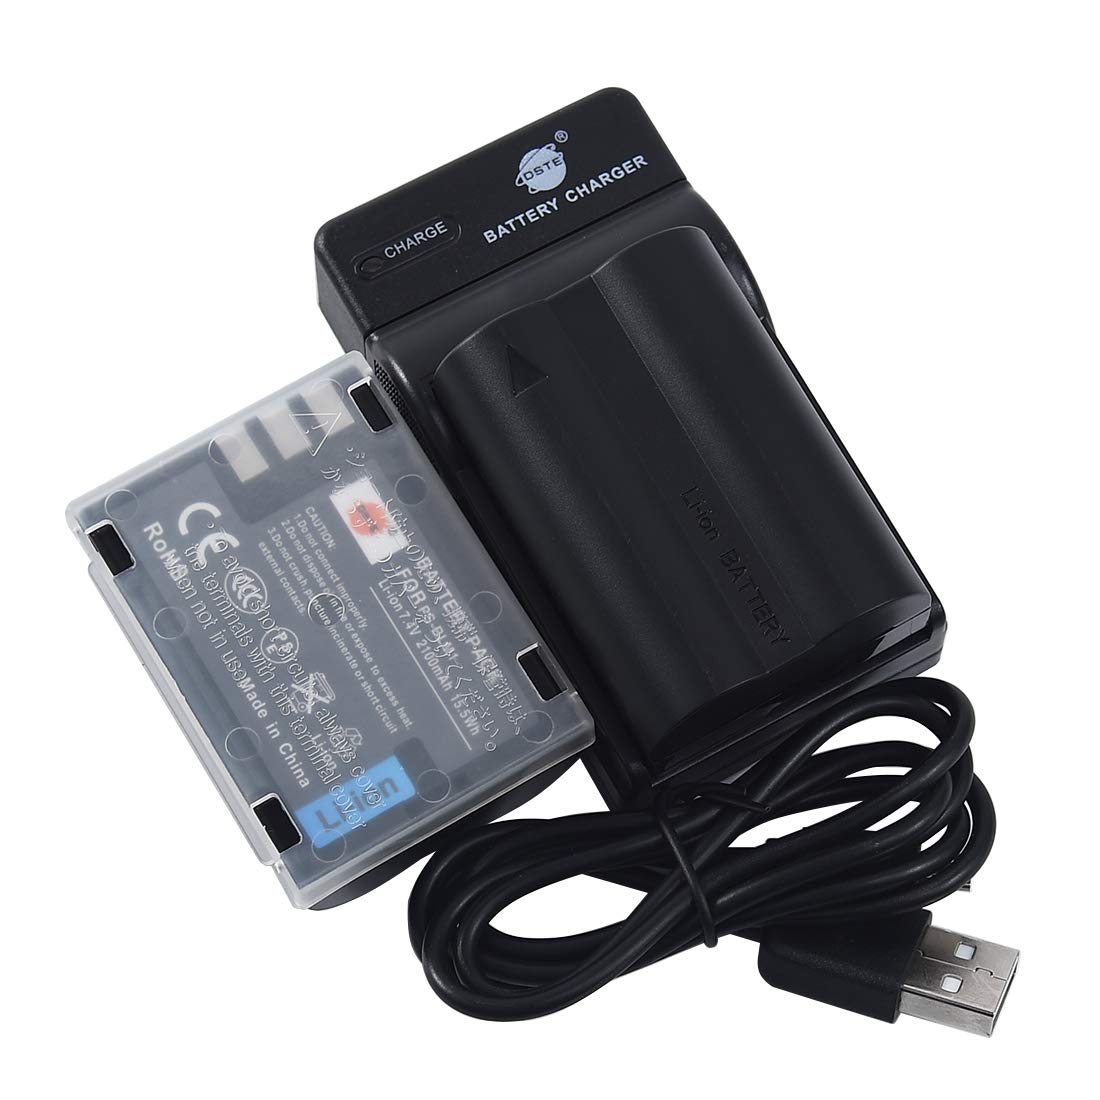 DSTE BLM-1 Li-Ionen Batterie (2-Pack) und Micro USB Ladegerät Anzug Kompatibel mit Olympus EVOLT E-300, E-330, E-500, E-510, C-5060, C-7070, C-8080, E-1, E-3, E-30, E-520